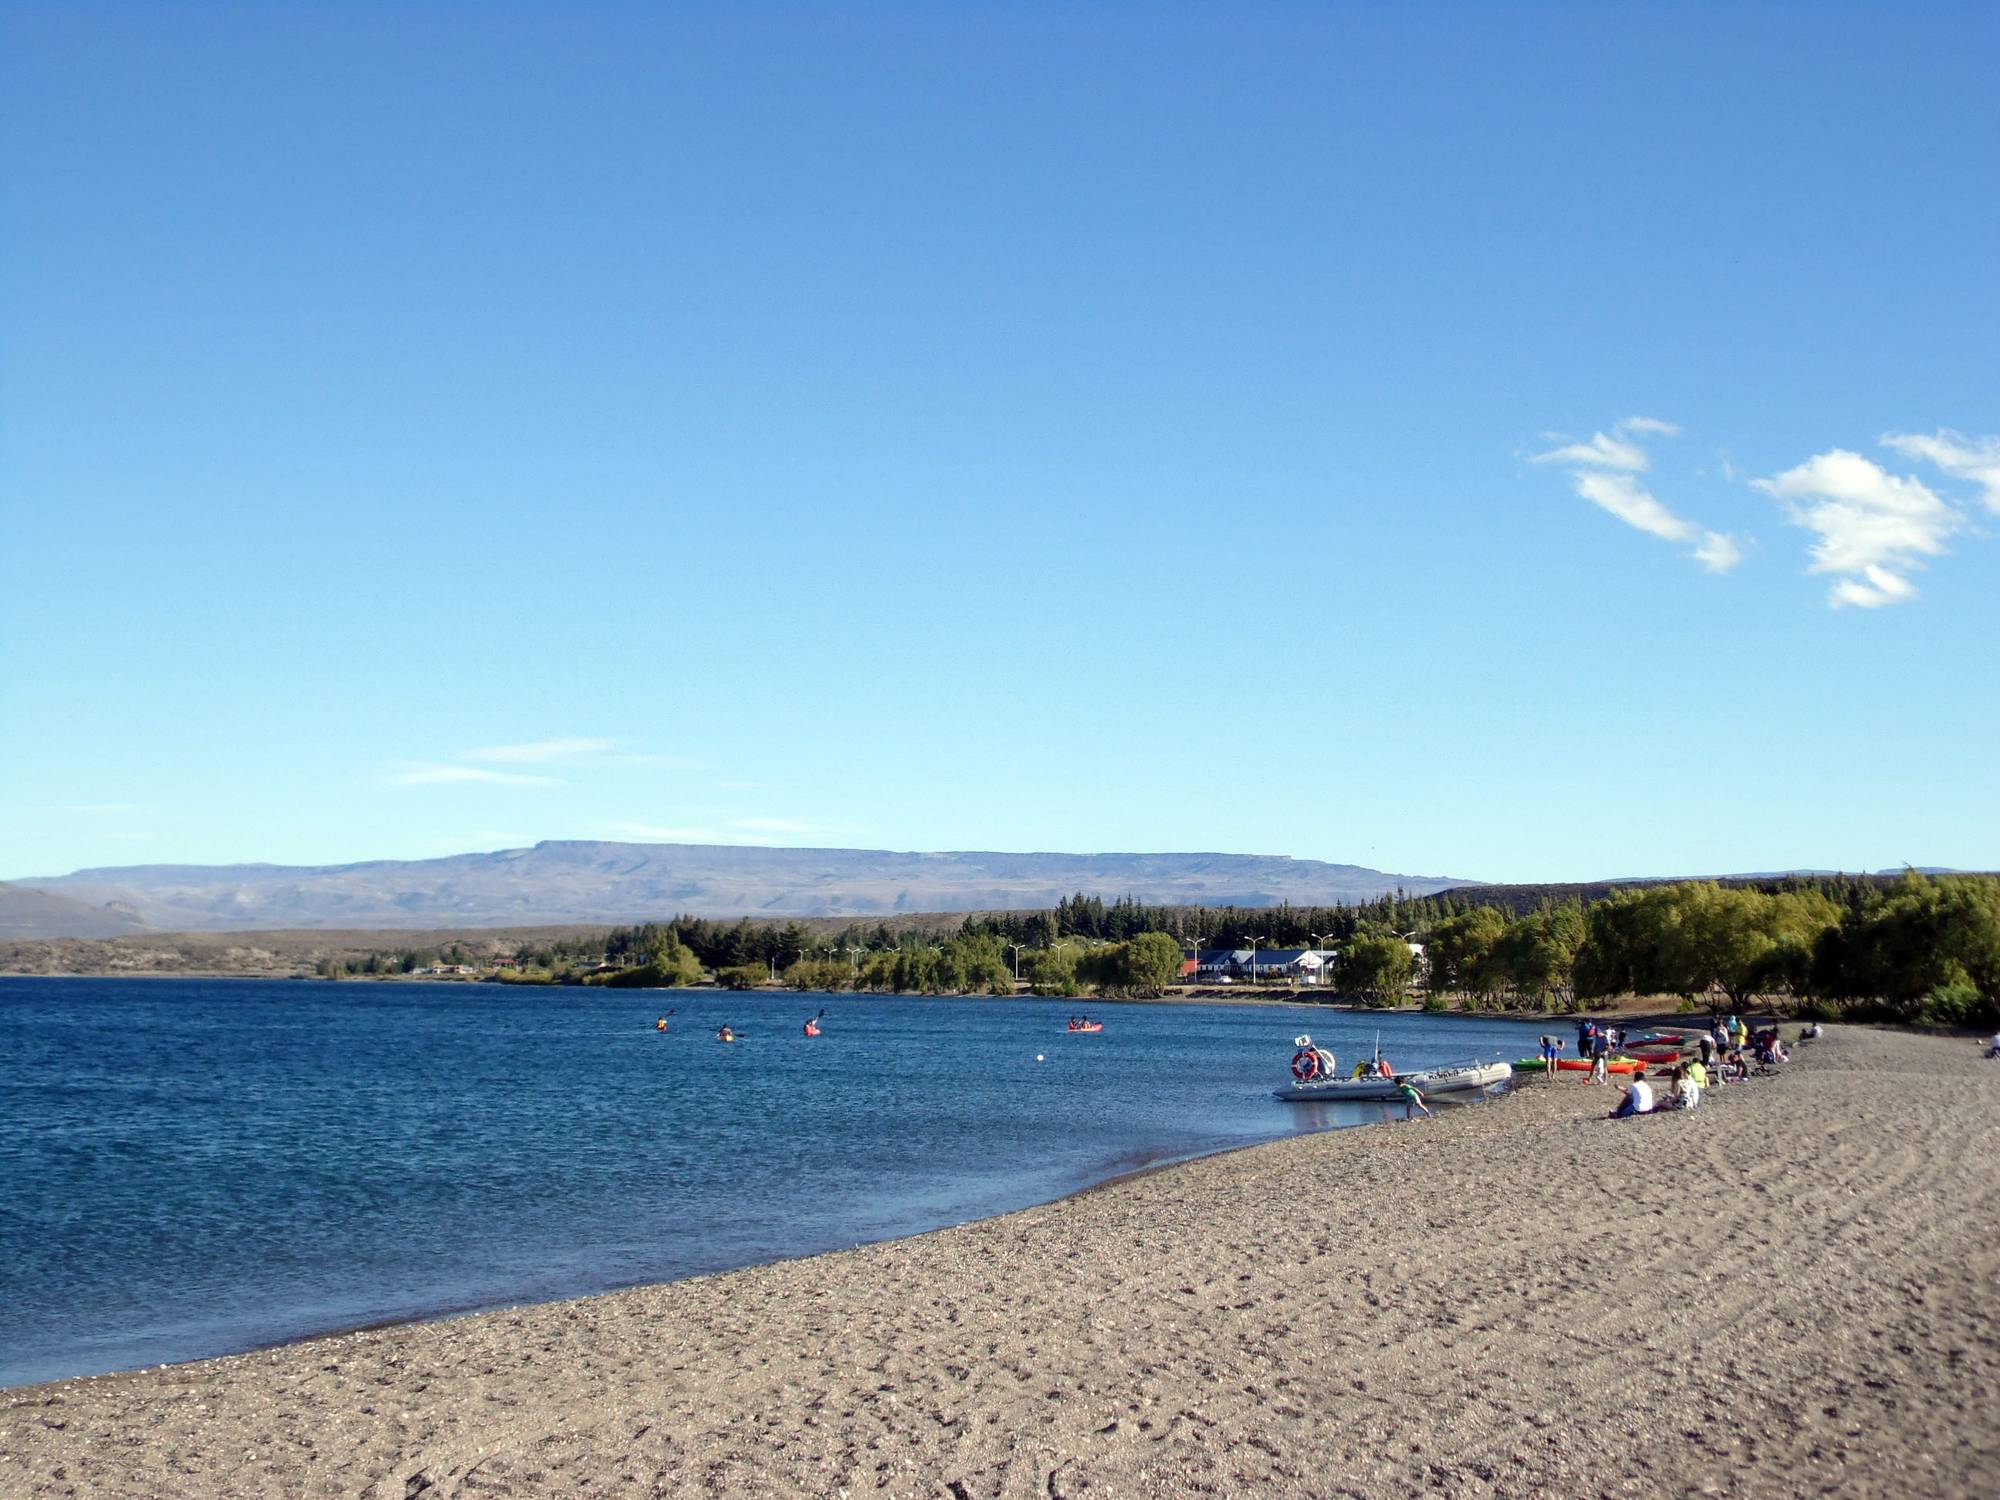 Lake General Carrera